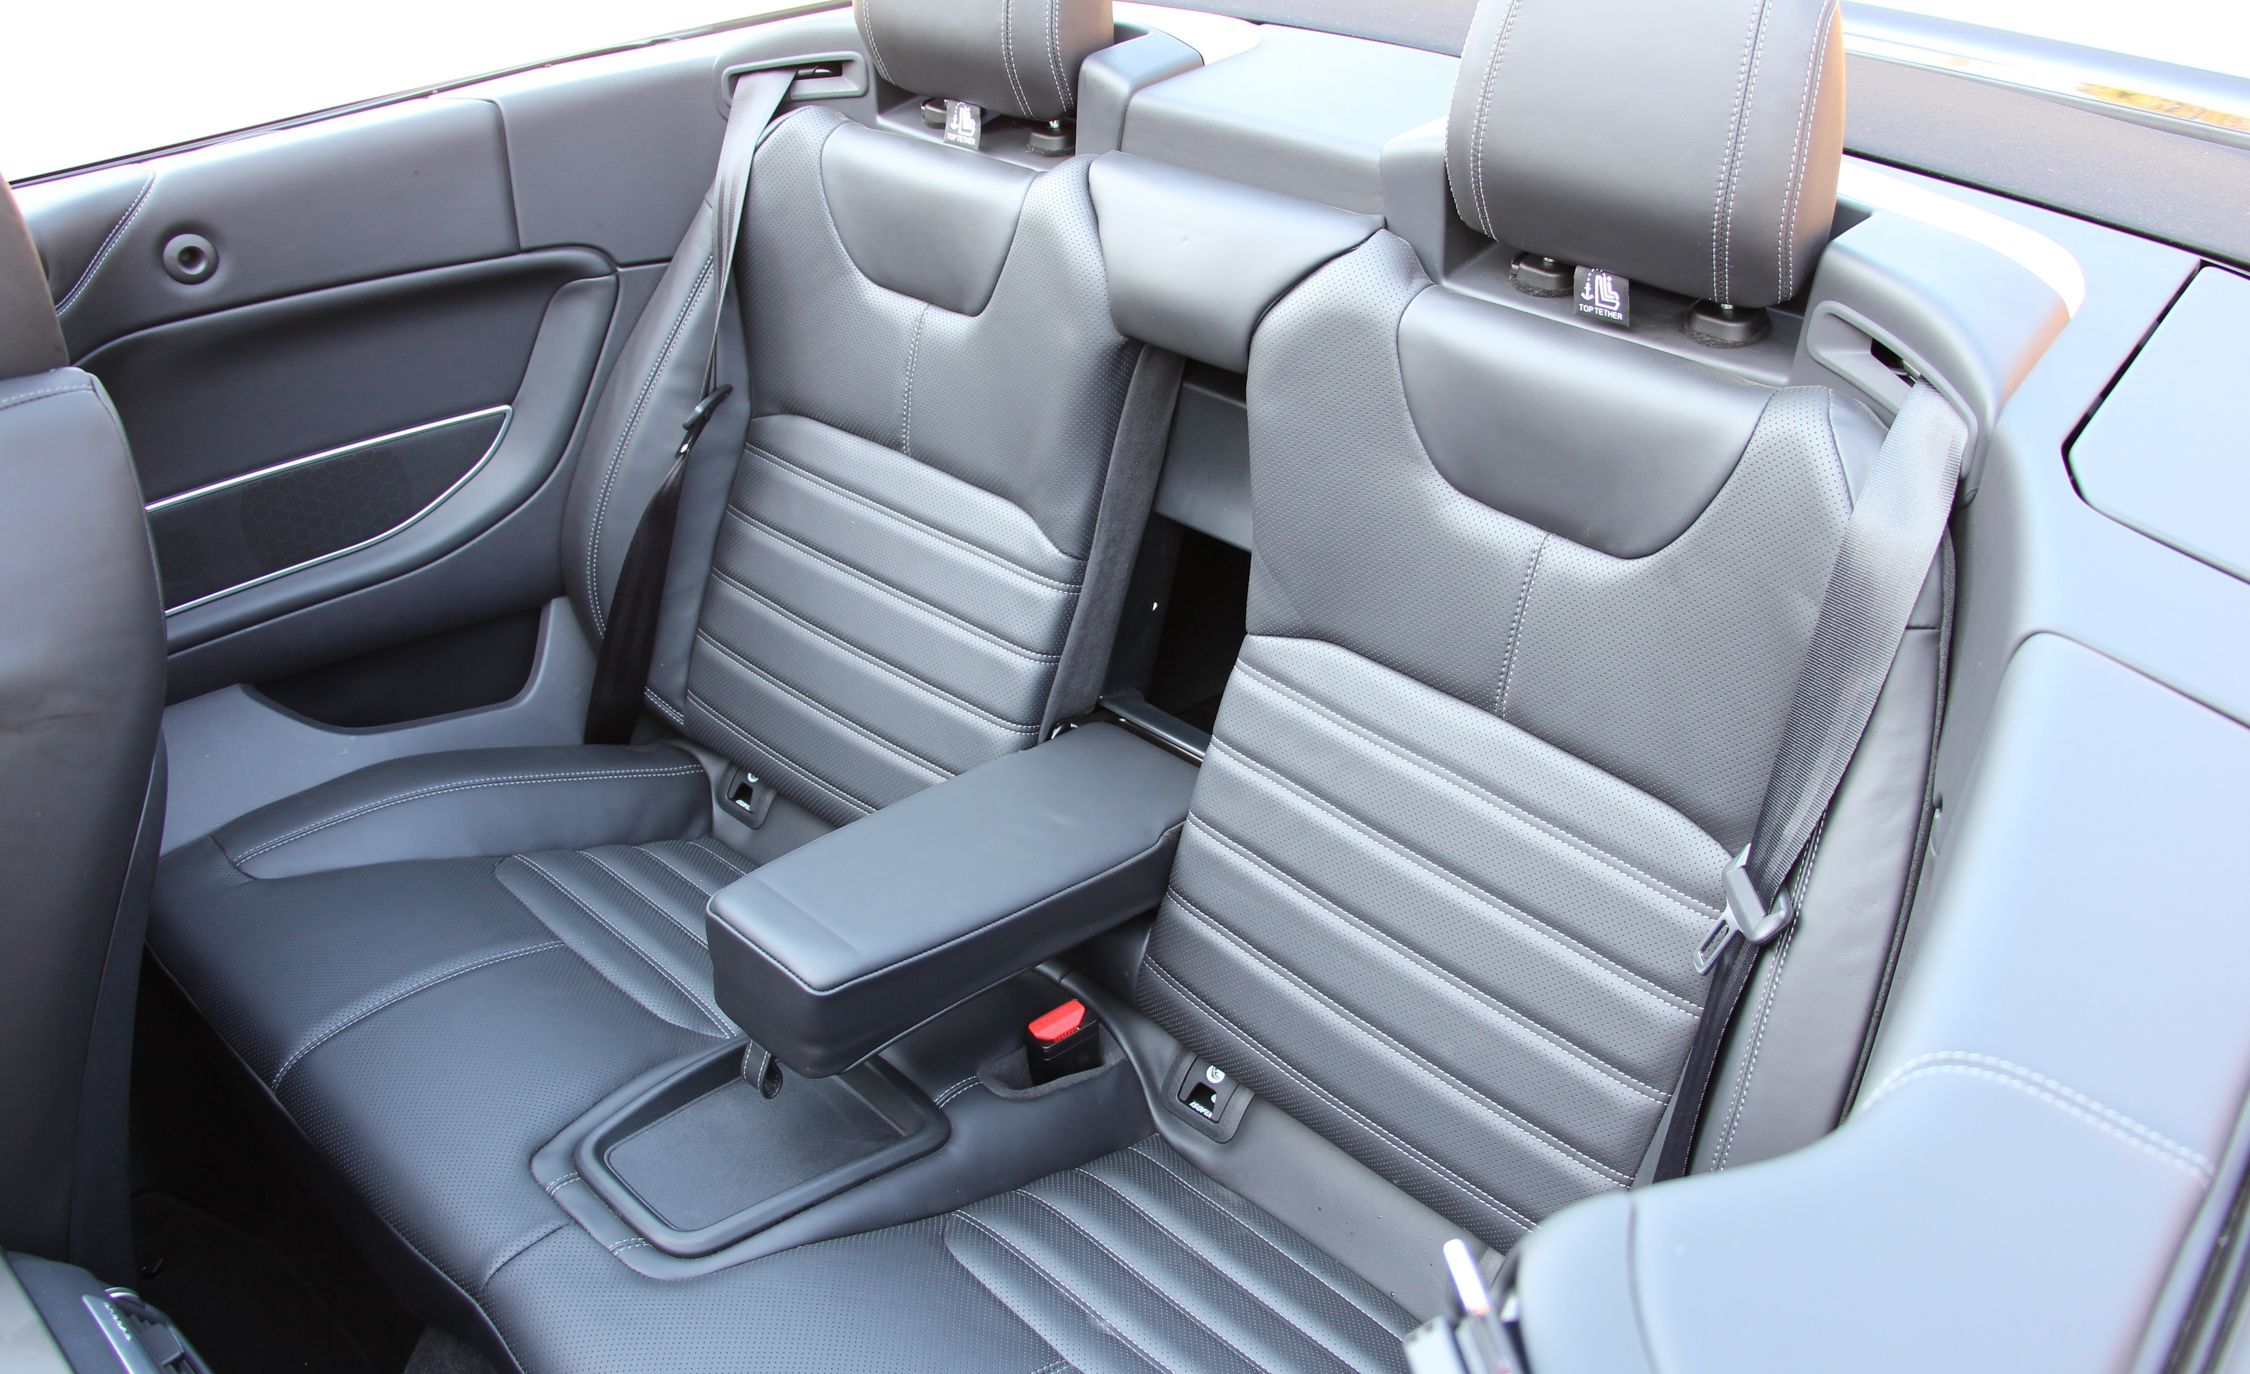 2017 Land Rover Range Rover Evoque Convertible Interior Seats Rear (View 3 of 14)